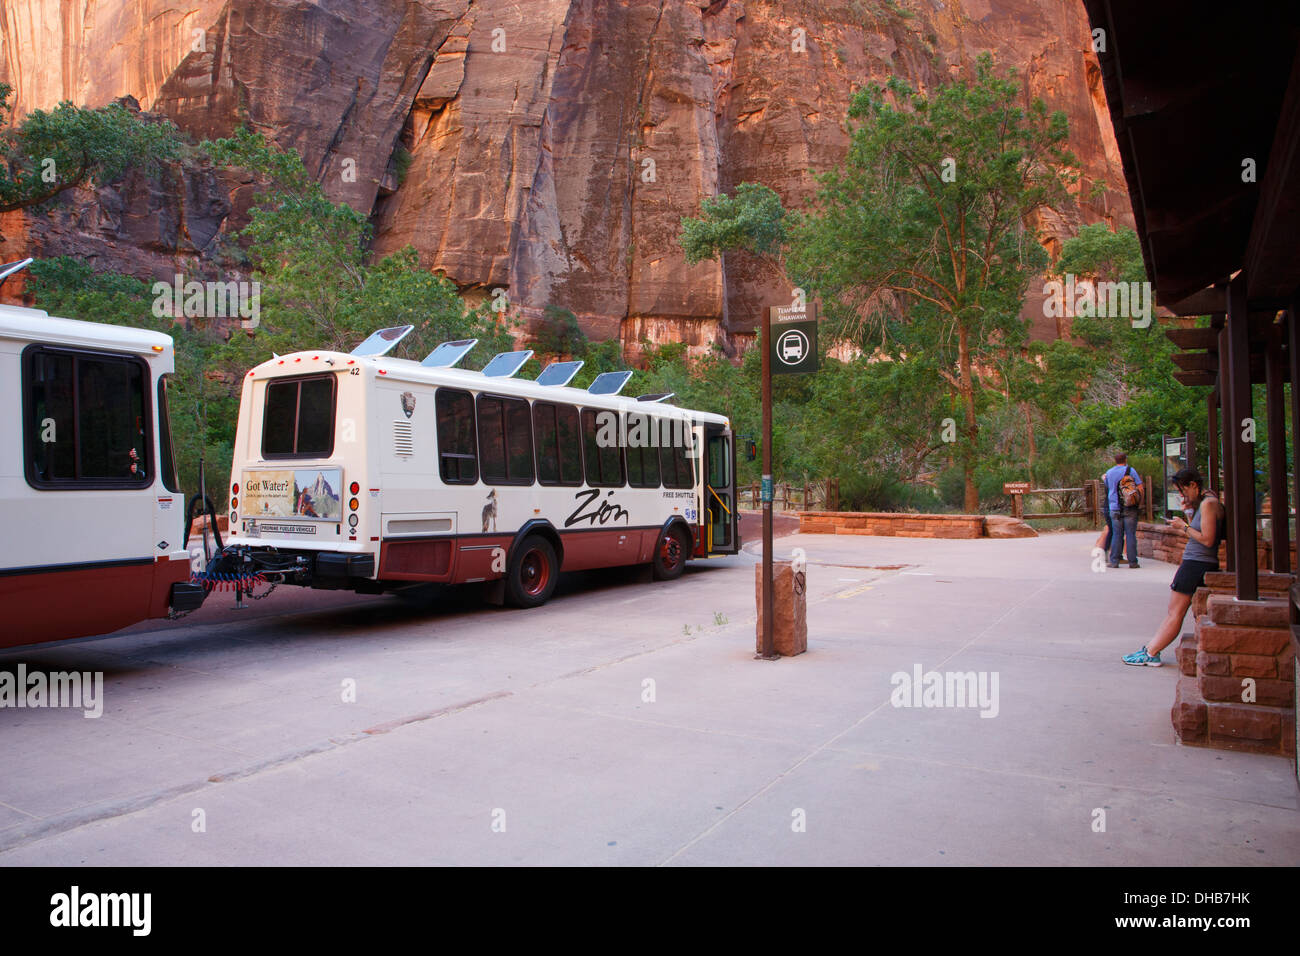 Autobus navetta presso il Tempio di Sinawava, Parco Nazionale Zion, Utah. Foto Stock